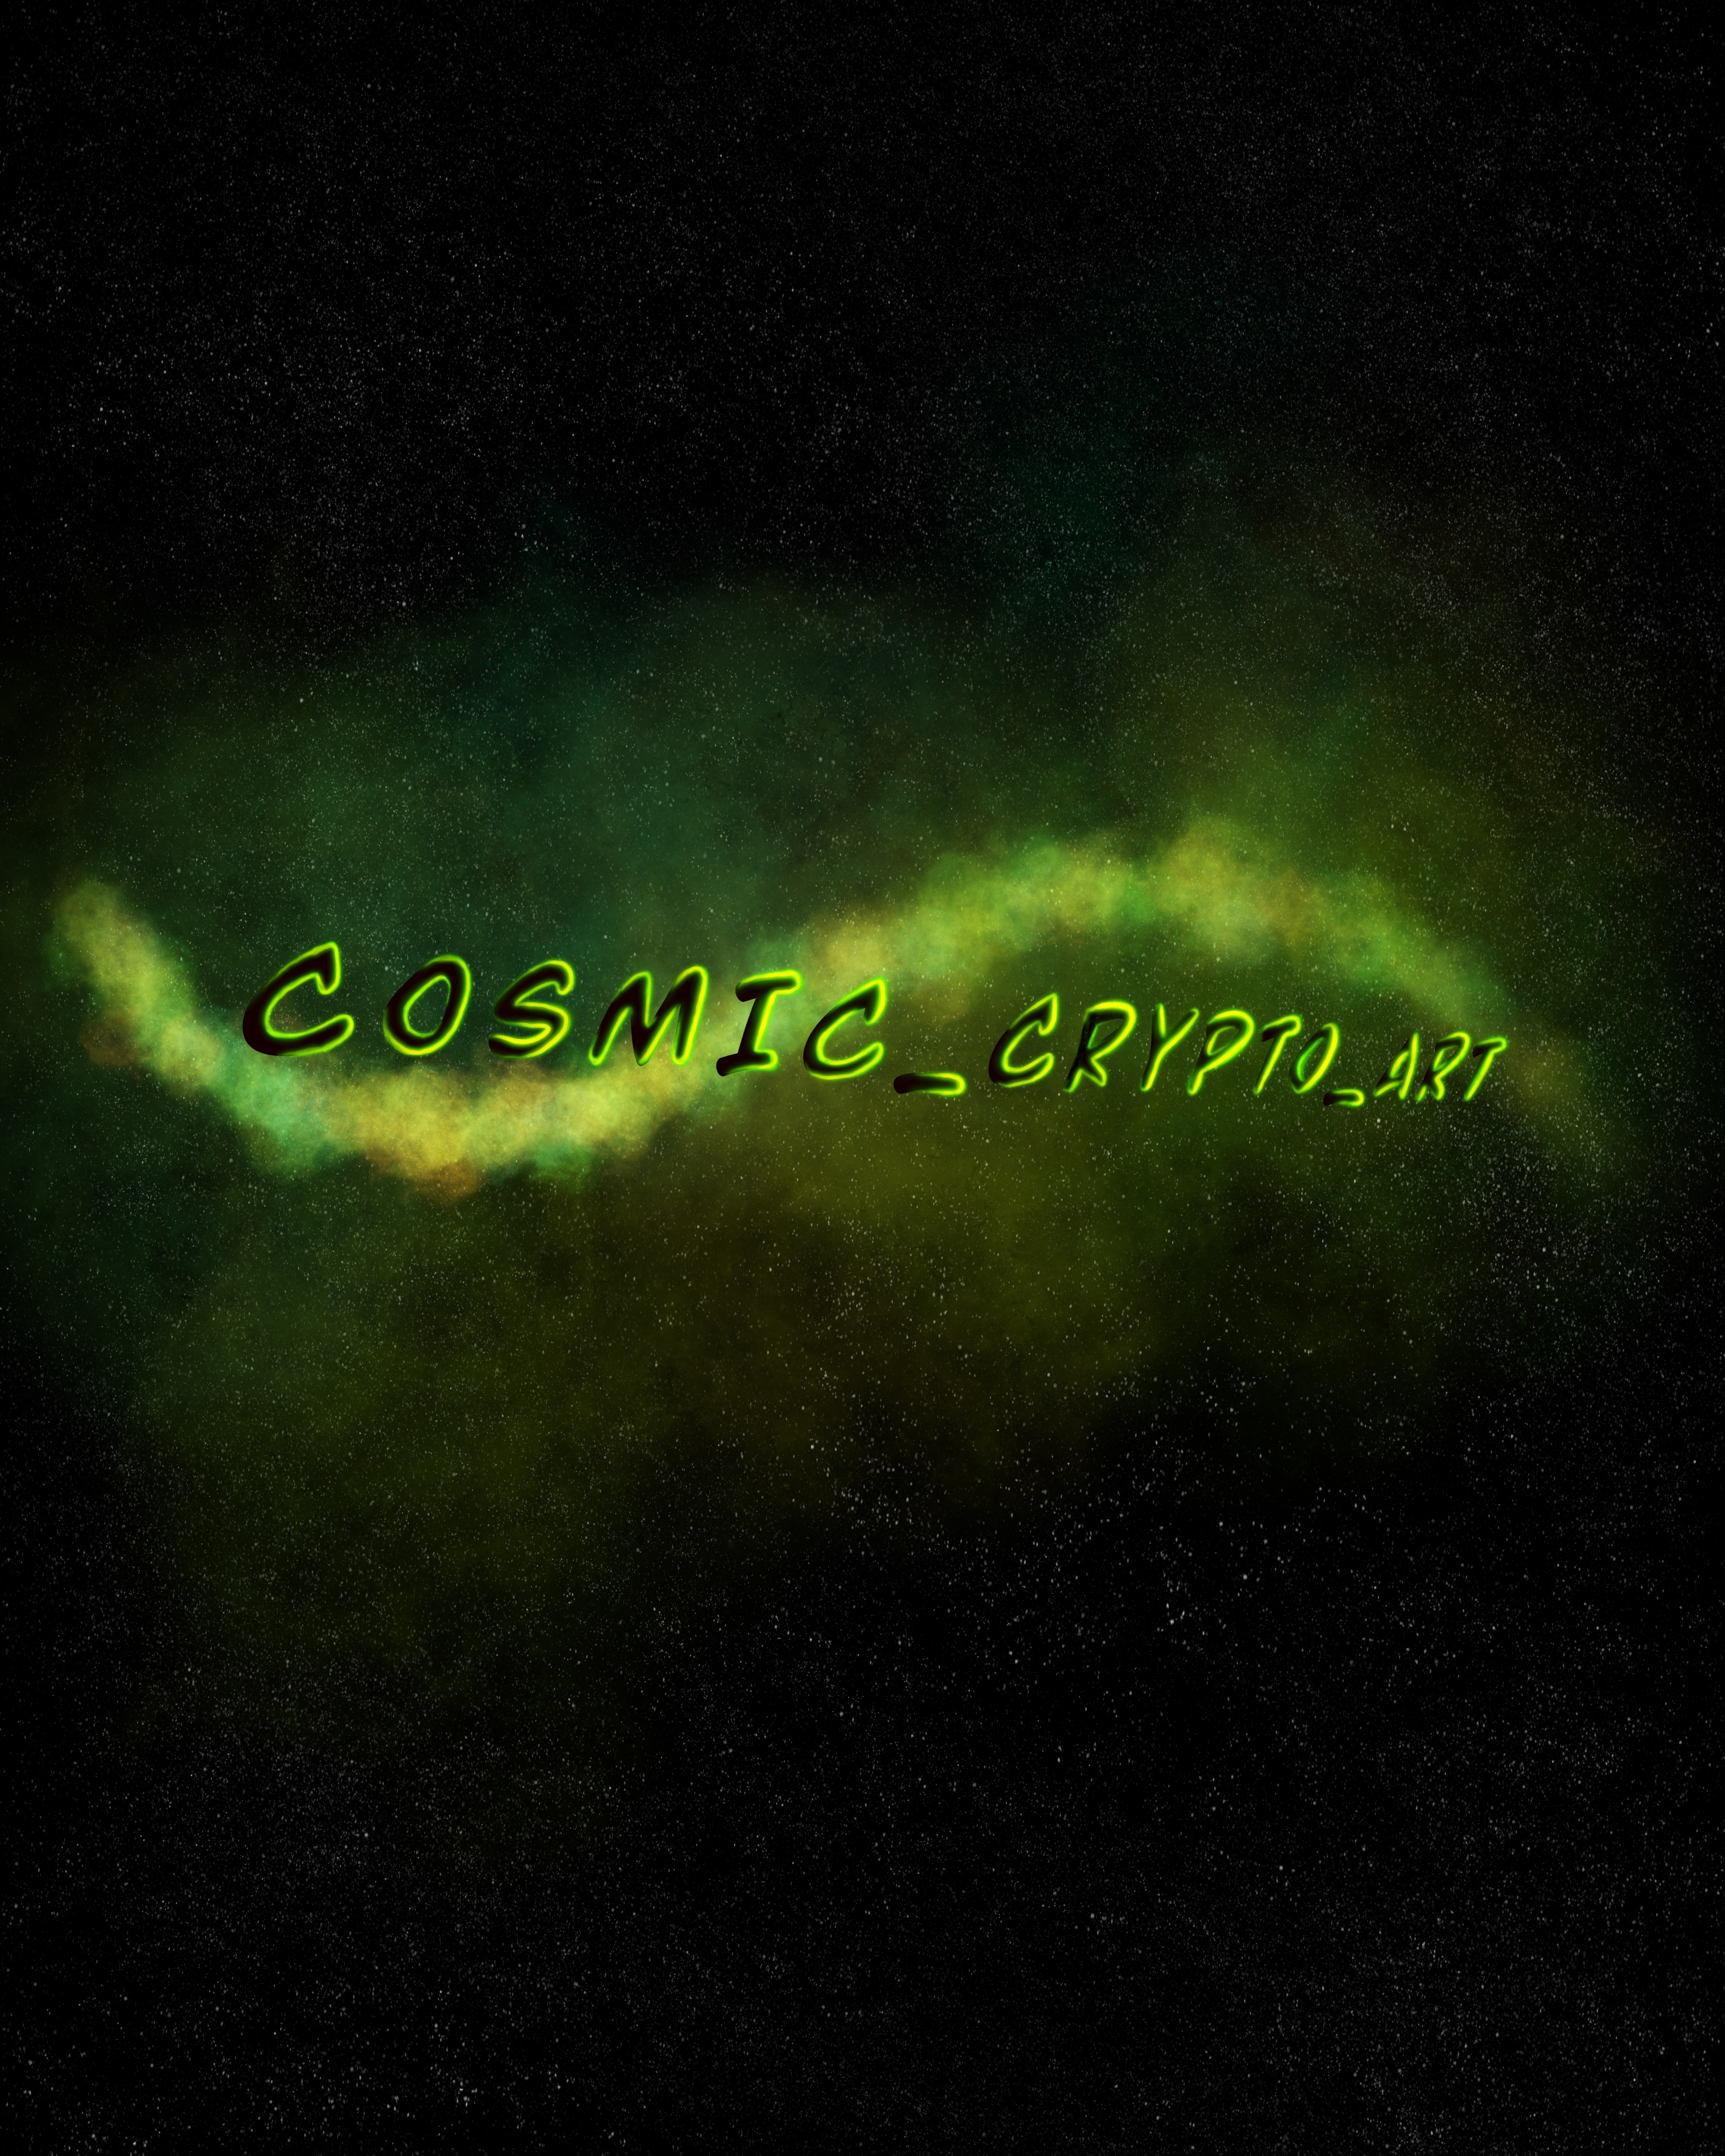 Cosmic_Crypto_Art